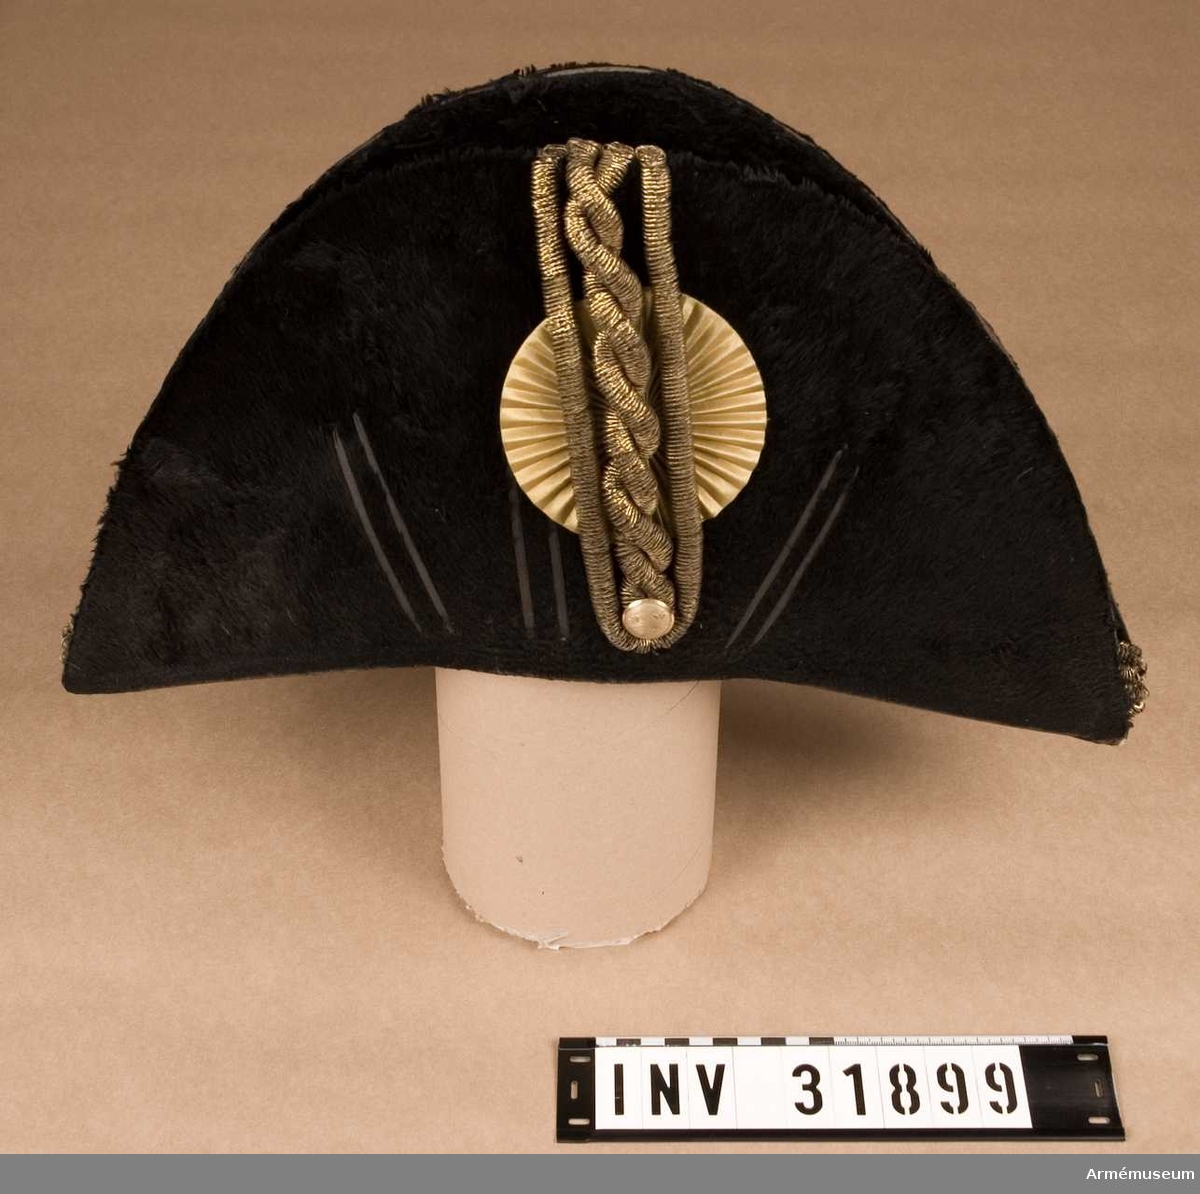 Grupp C.
Trekantig hatt för officer vid Livregementets dragoner.